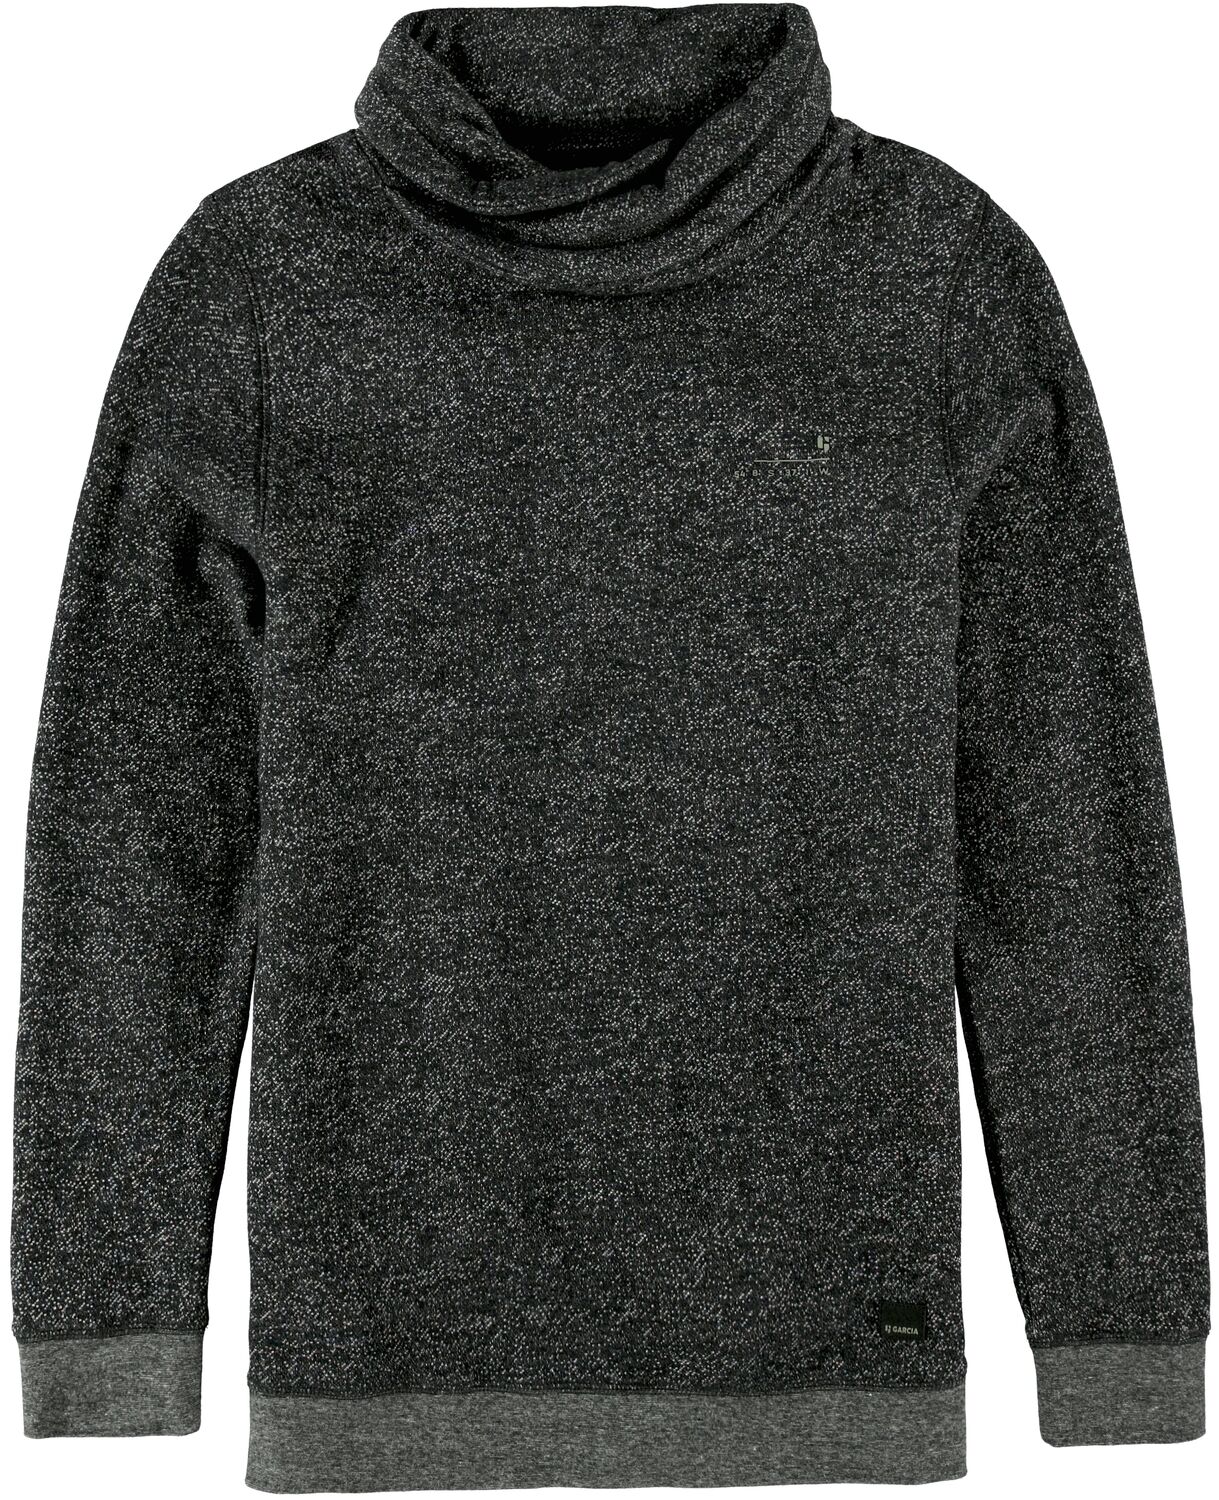 schwarzer pullover